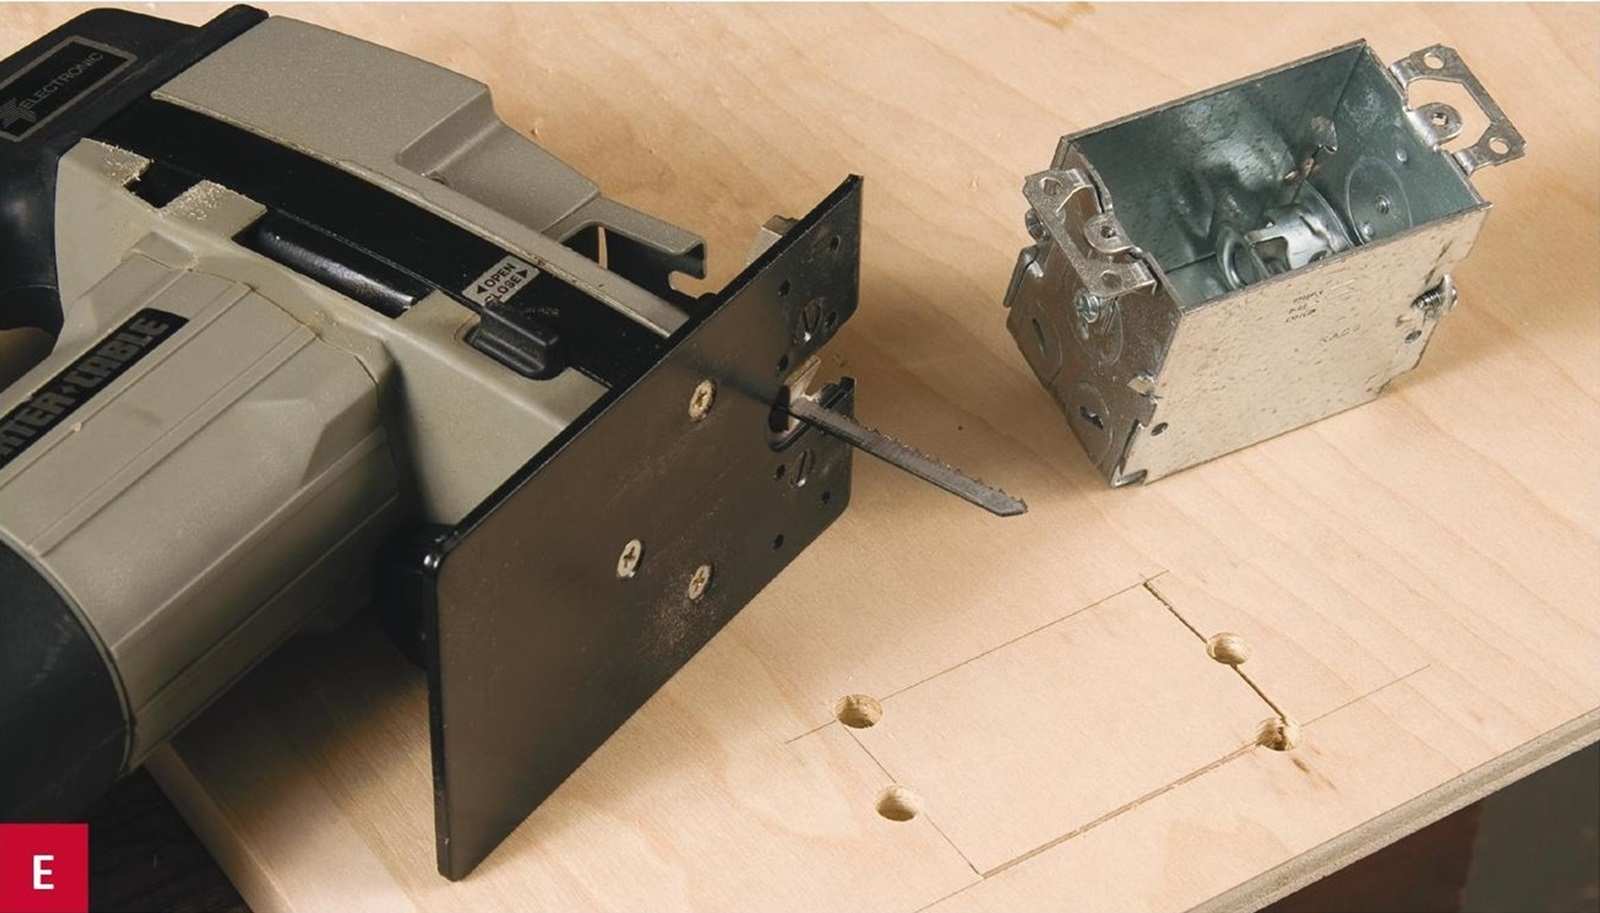 Dùng máy khoan để đục các lỗ theo khung đã kẻ sẵn, sau đó dùng một chiếc máy cưa lọng để cắt theo phần khung dựa vào các lỗ đã được đục sẵn